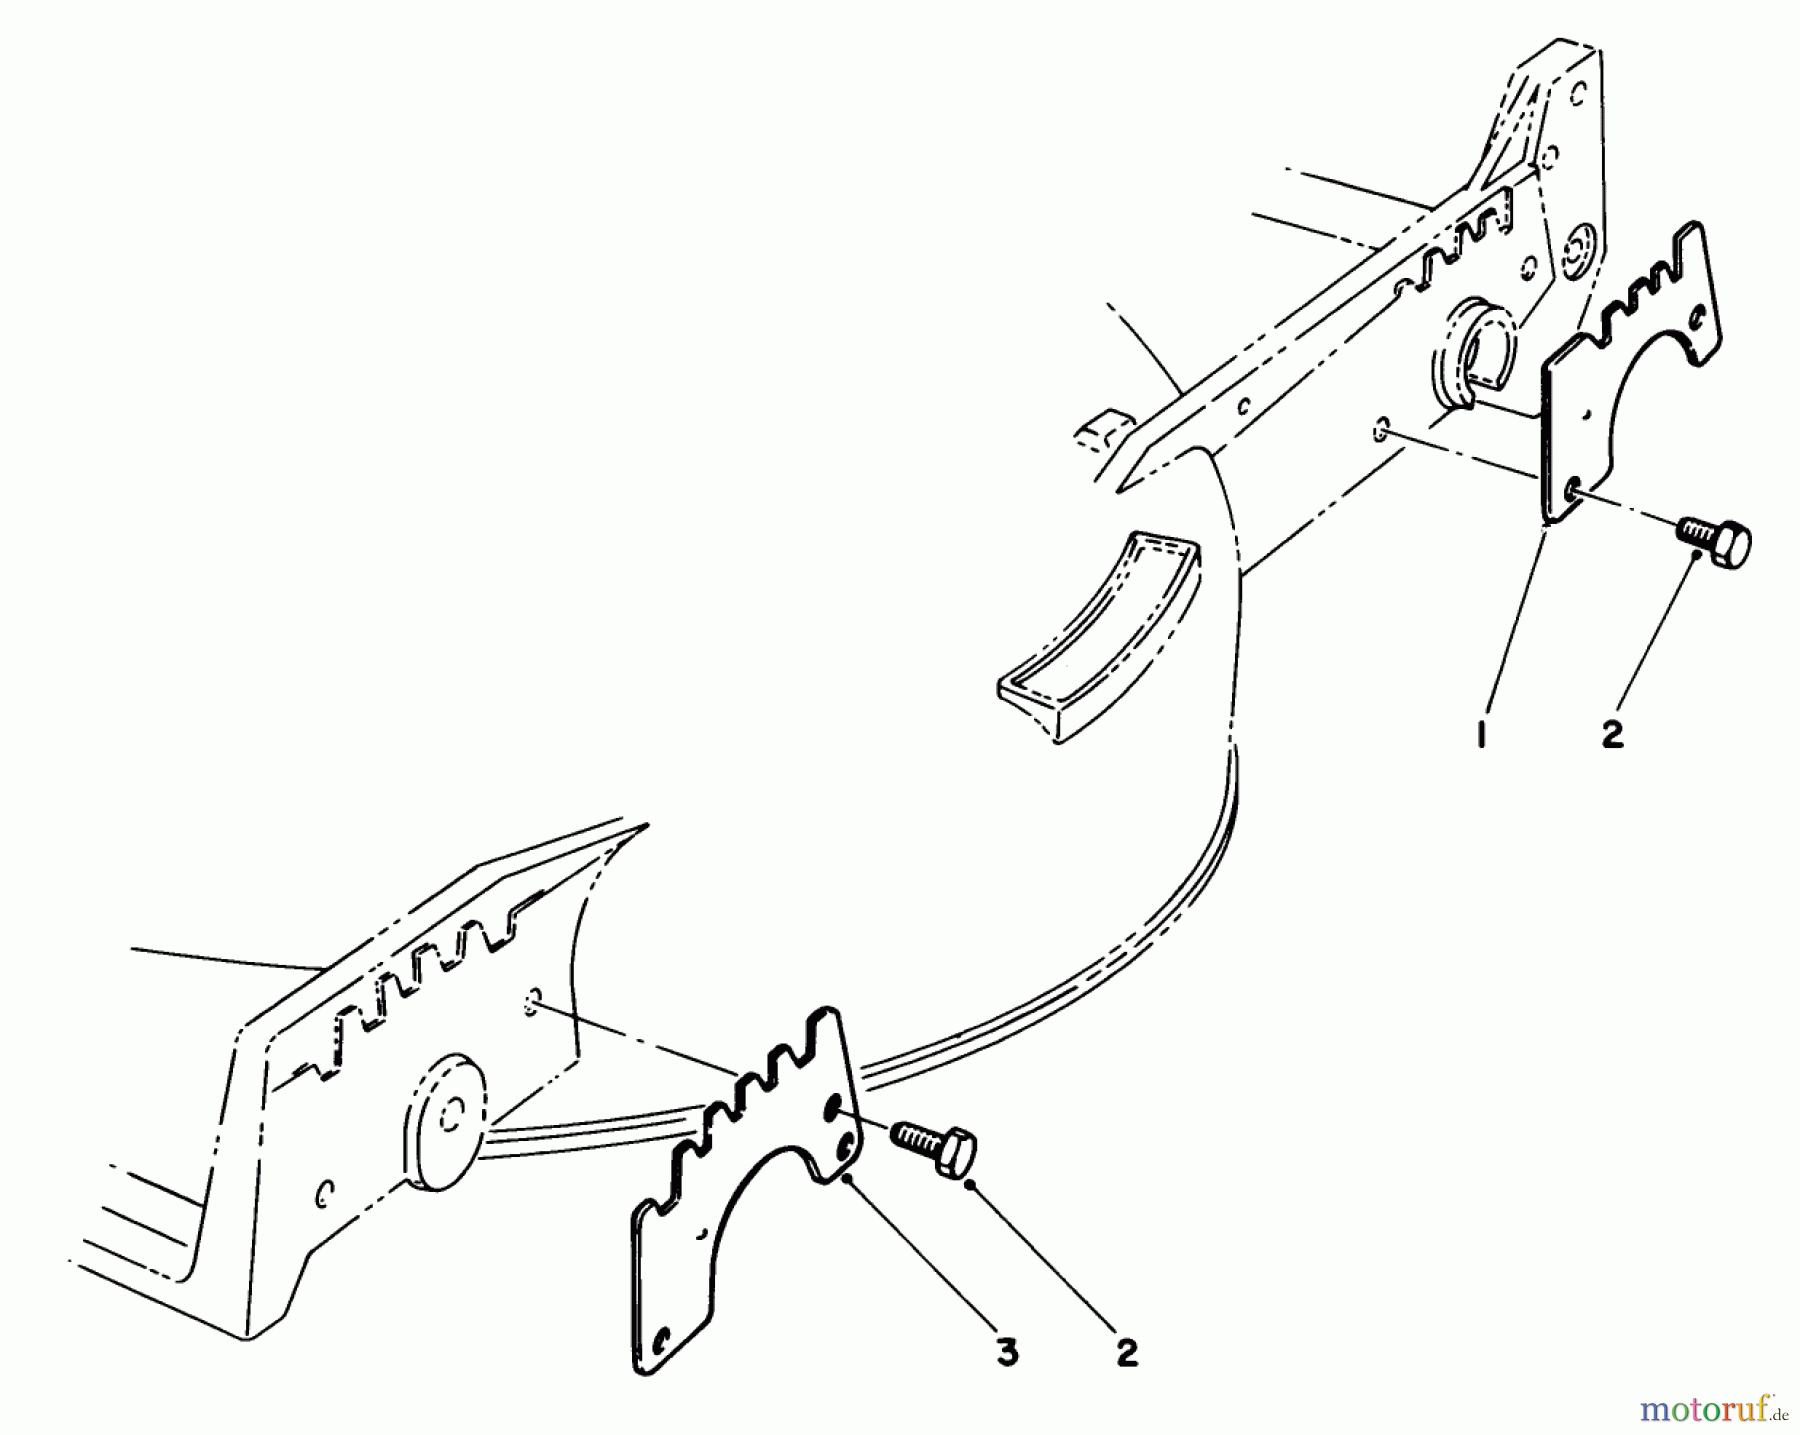  Toro Neu Mowers, Walk-Behind Seite 1 20620 - Toro Lawnmower, 1986 (6000001-6999999) WEAR PLATE KIT NO. 49-4080 (OPTIONAL)